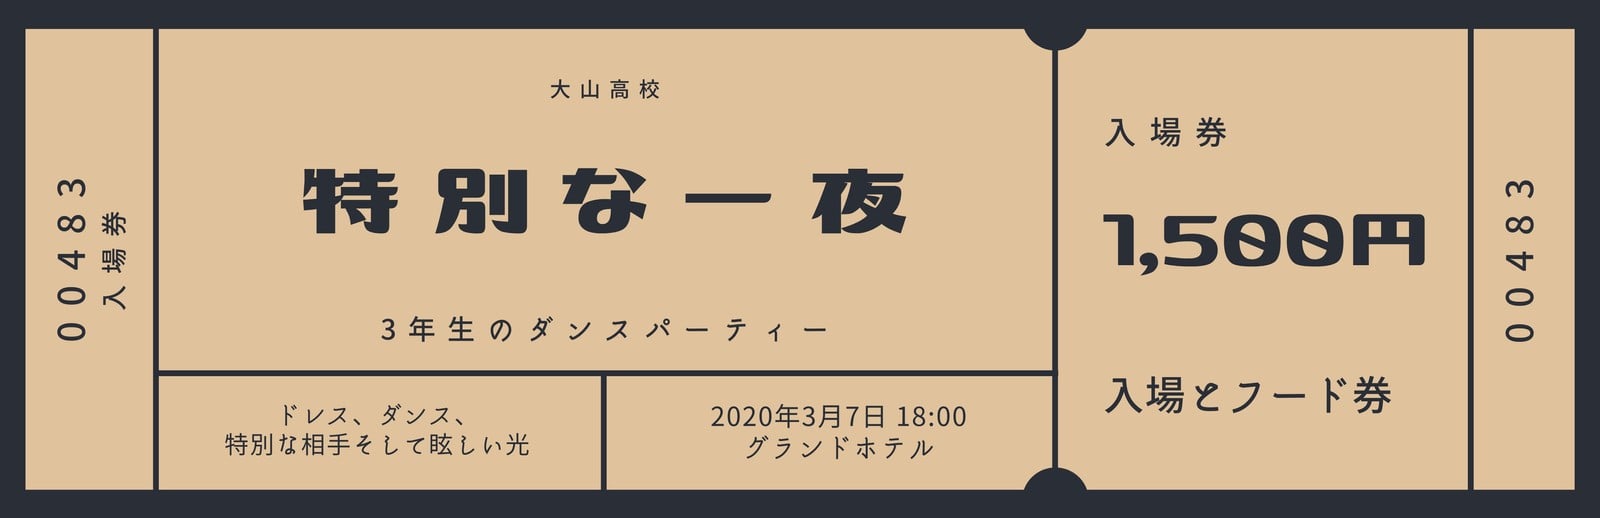 19633円 【ラッピング無料】 チケット